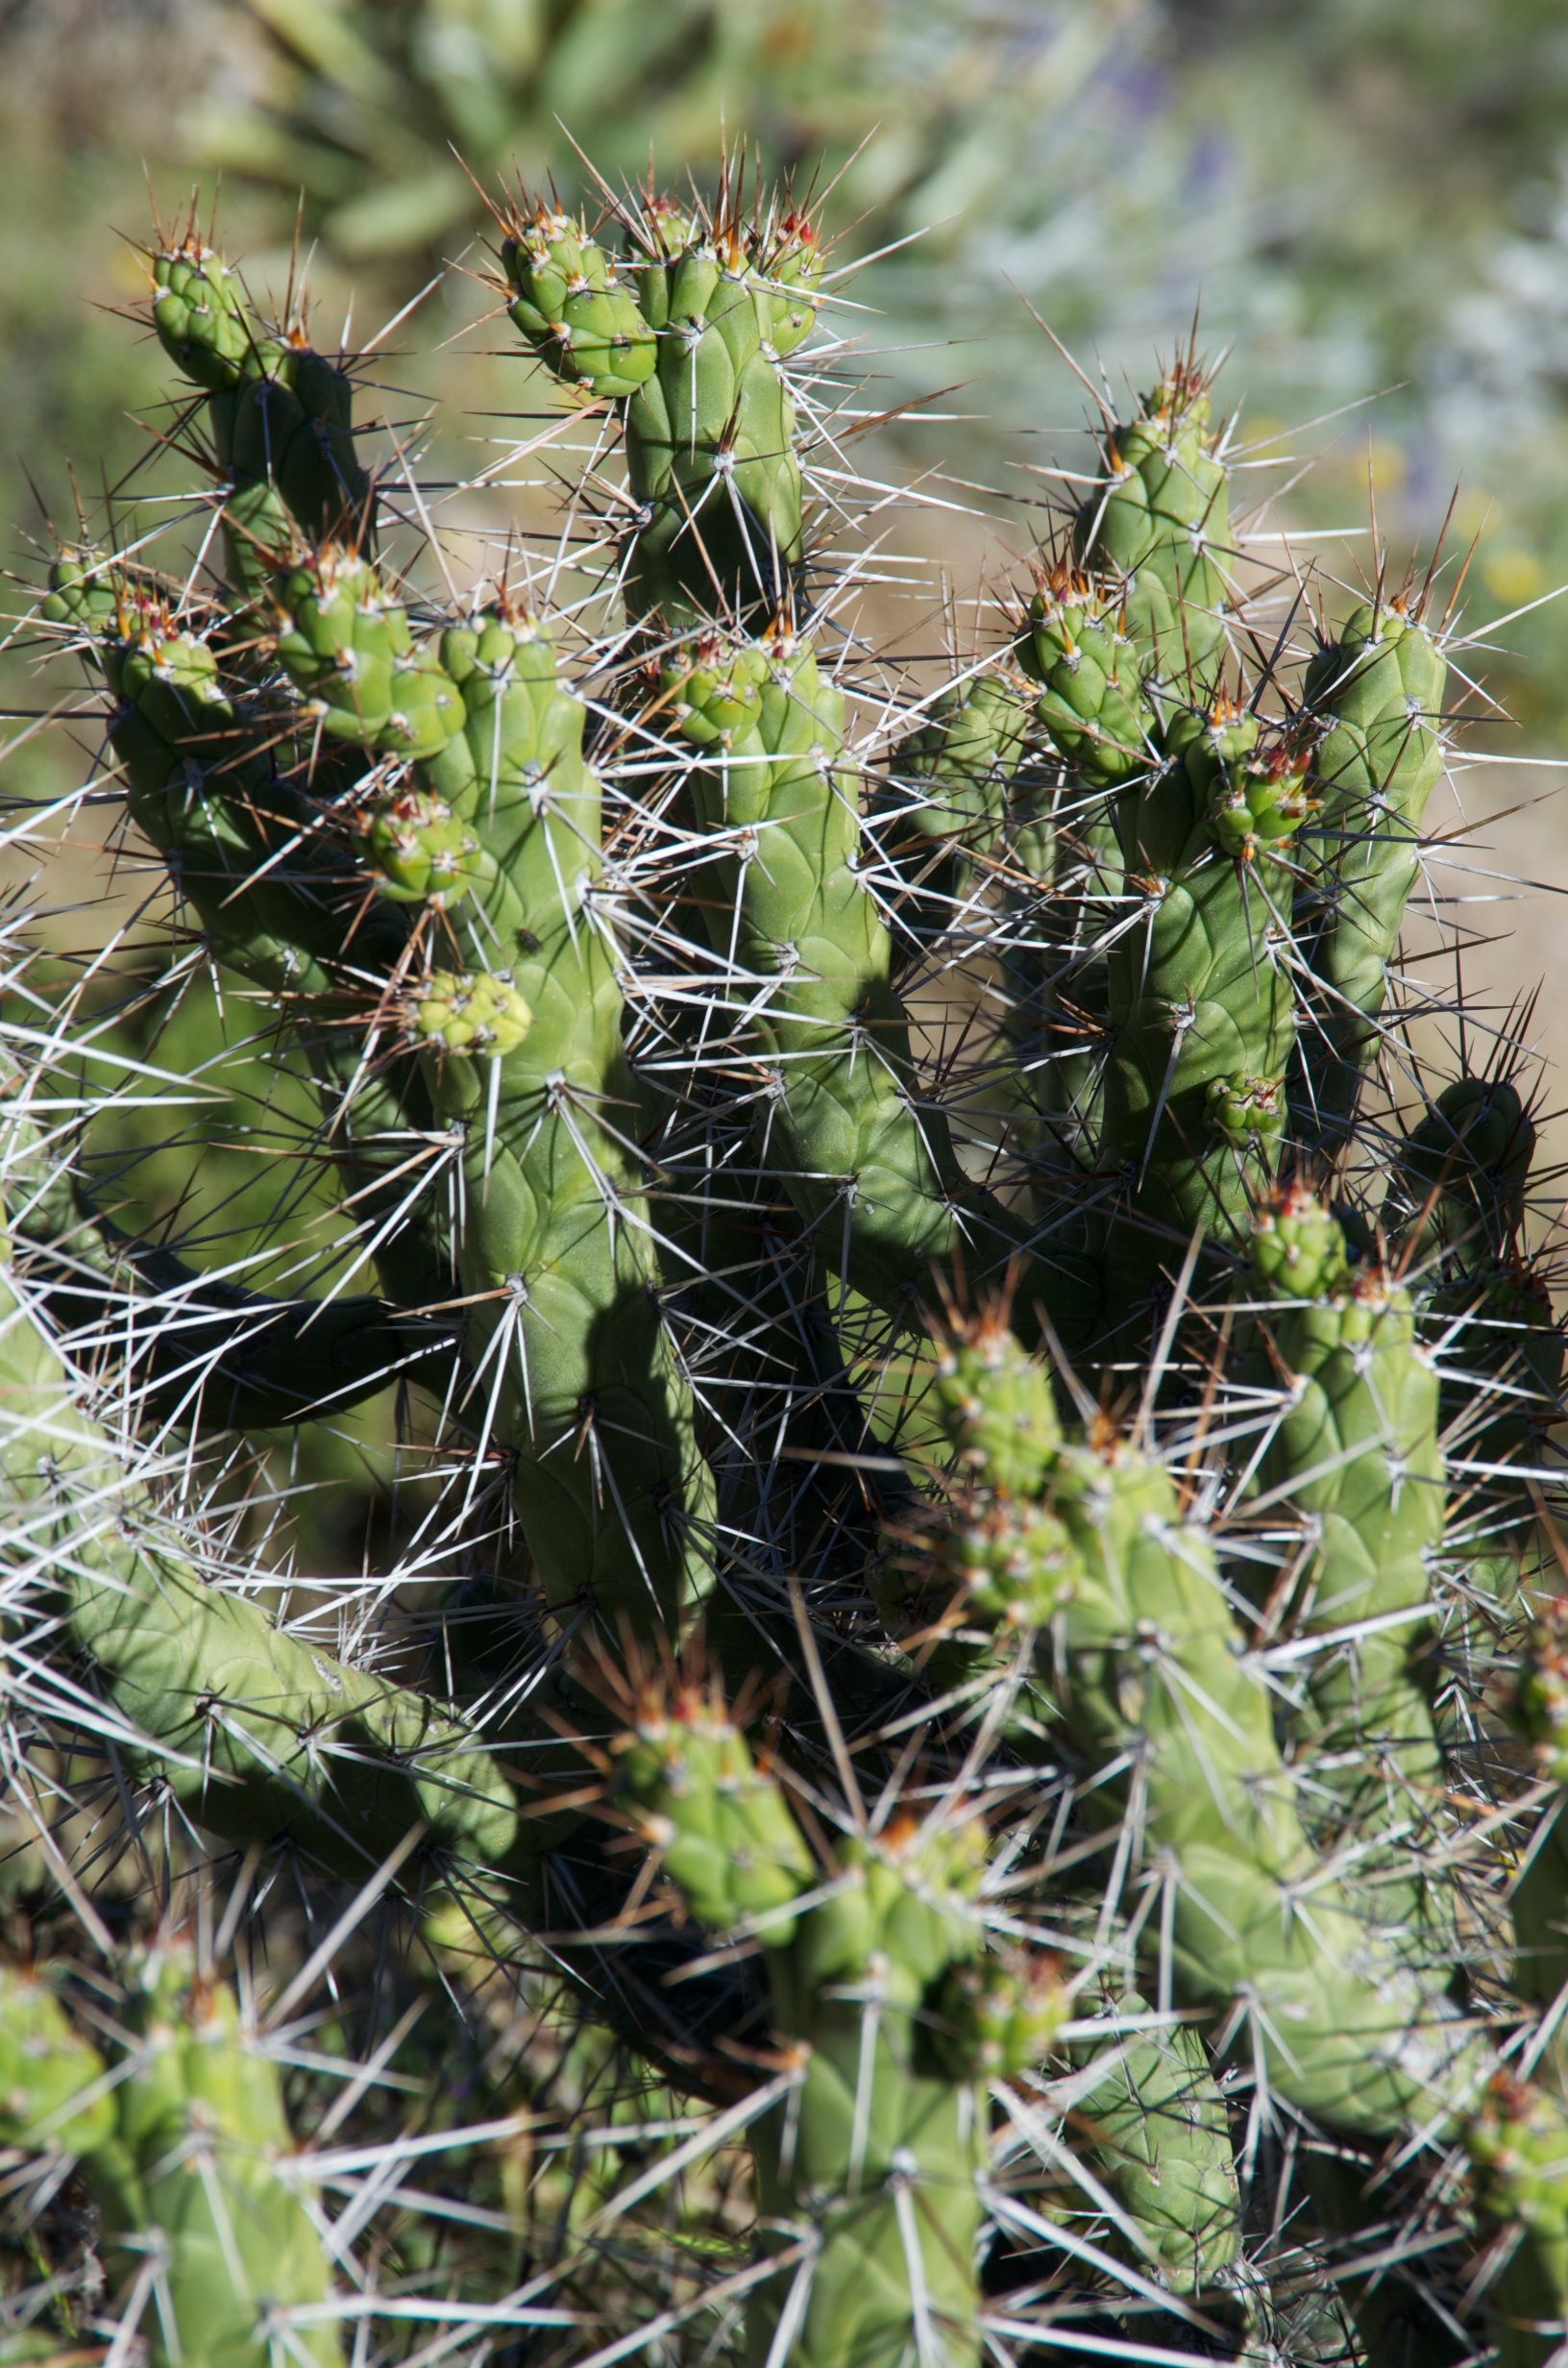  Cactus at Colca Canyon, Peru 